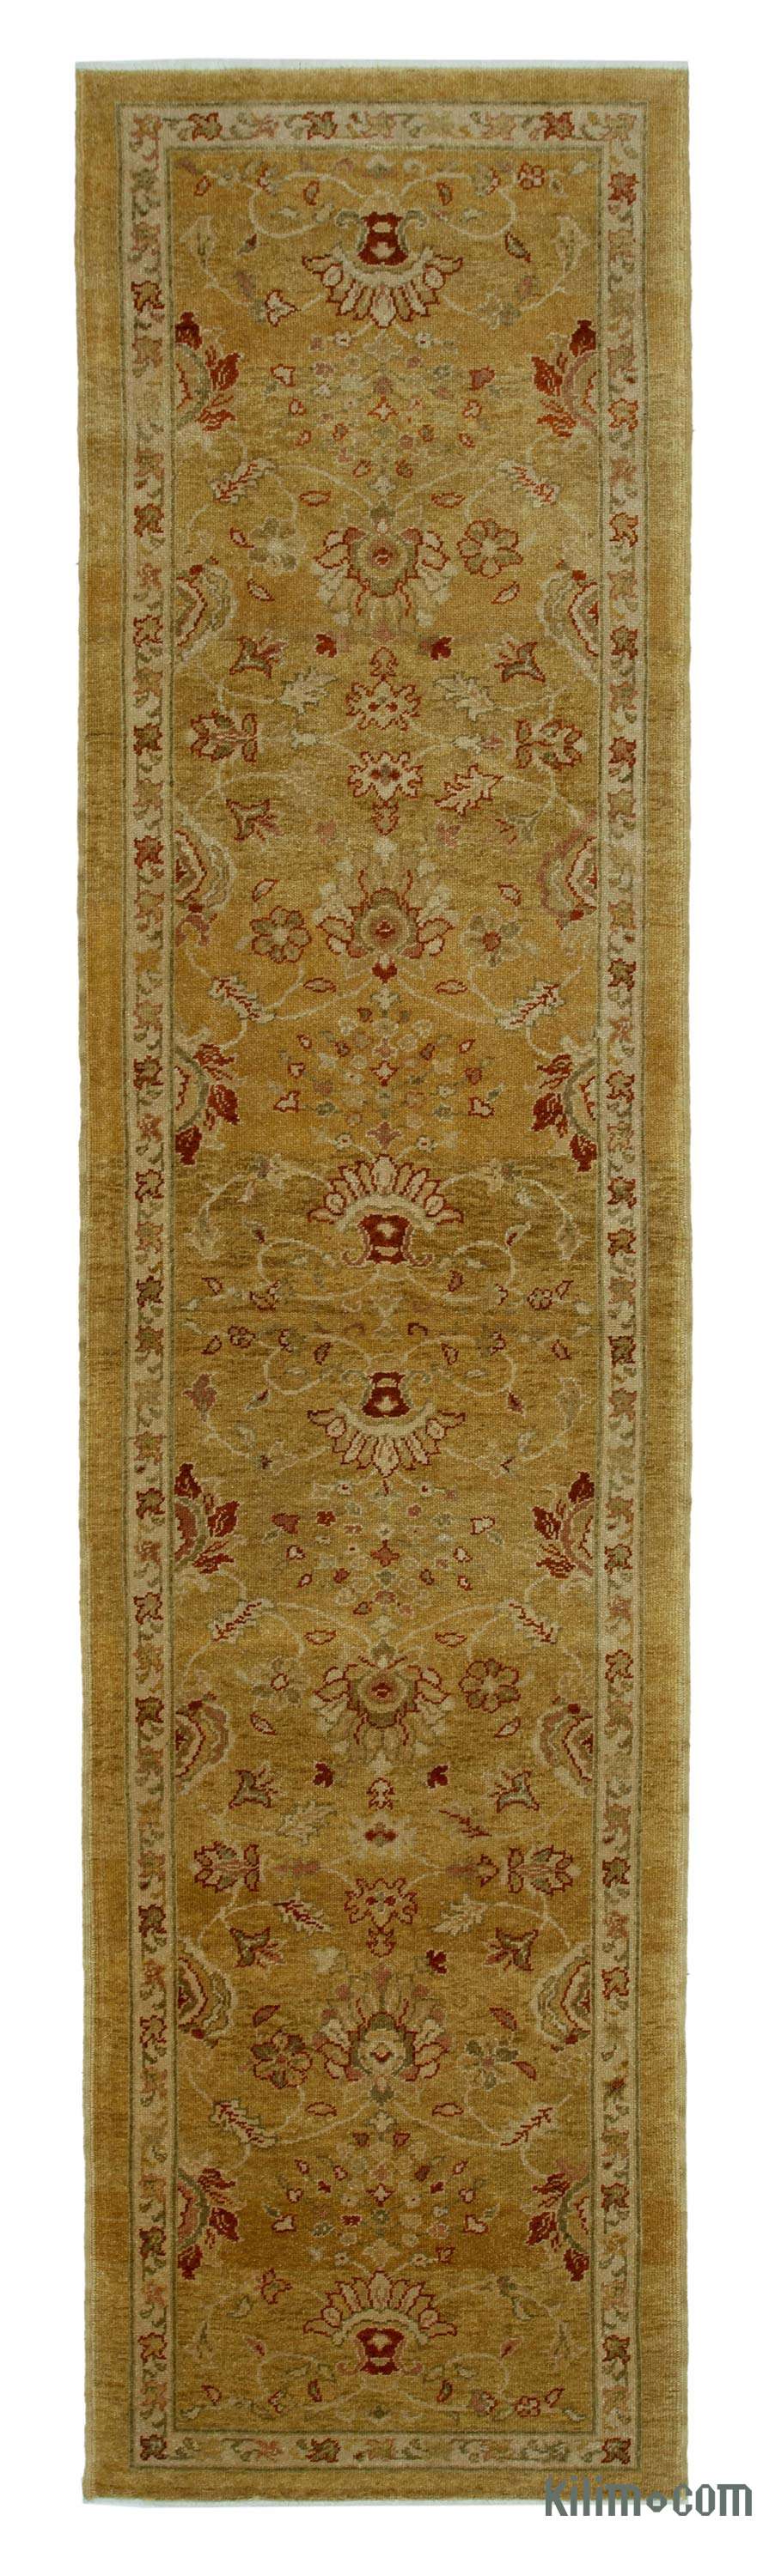 overdyed rug Free Shipping boho rug hallway runner rug MB3127 turkish rug runner rug hallway runner rug 4.7 x 11.5 ft oushak rug